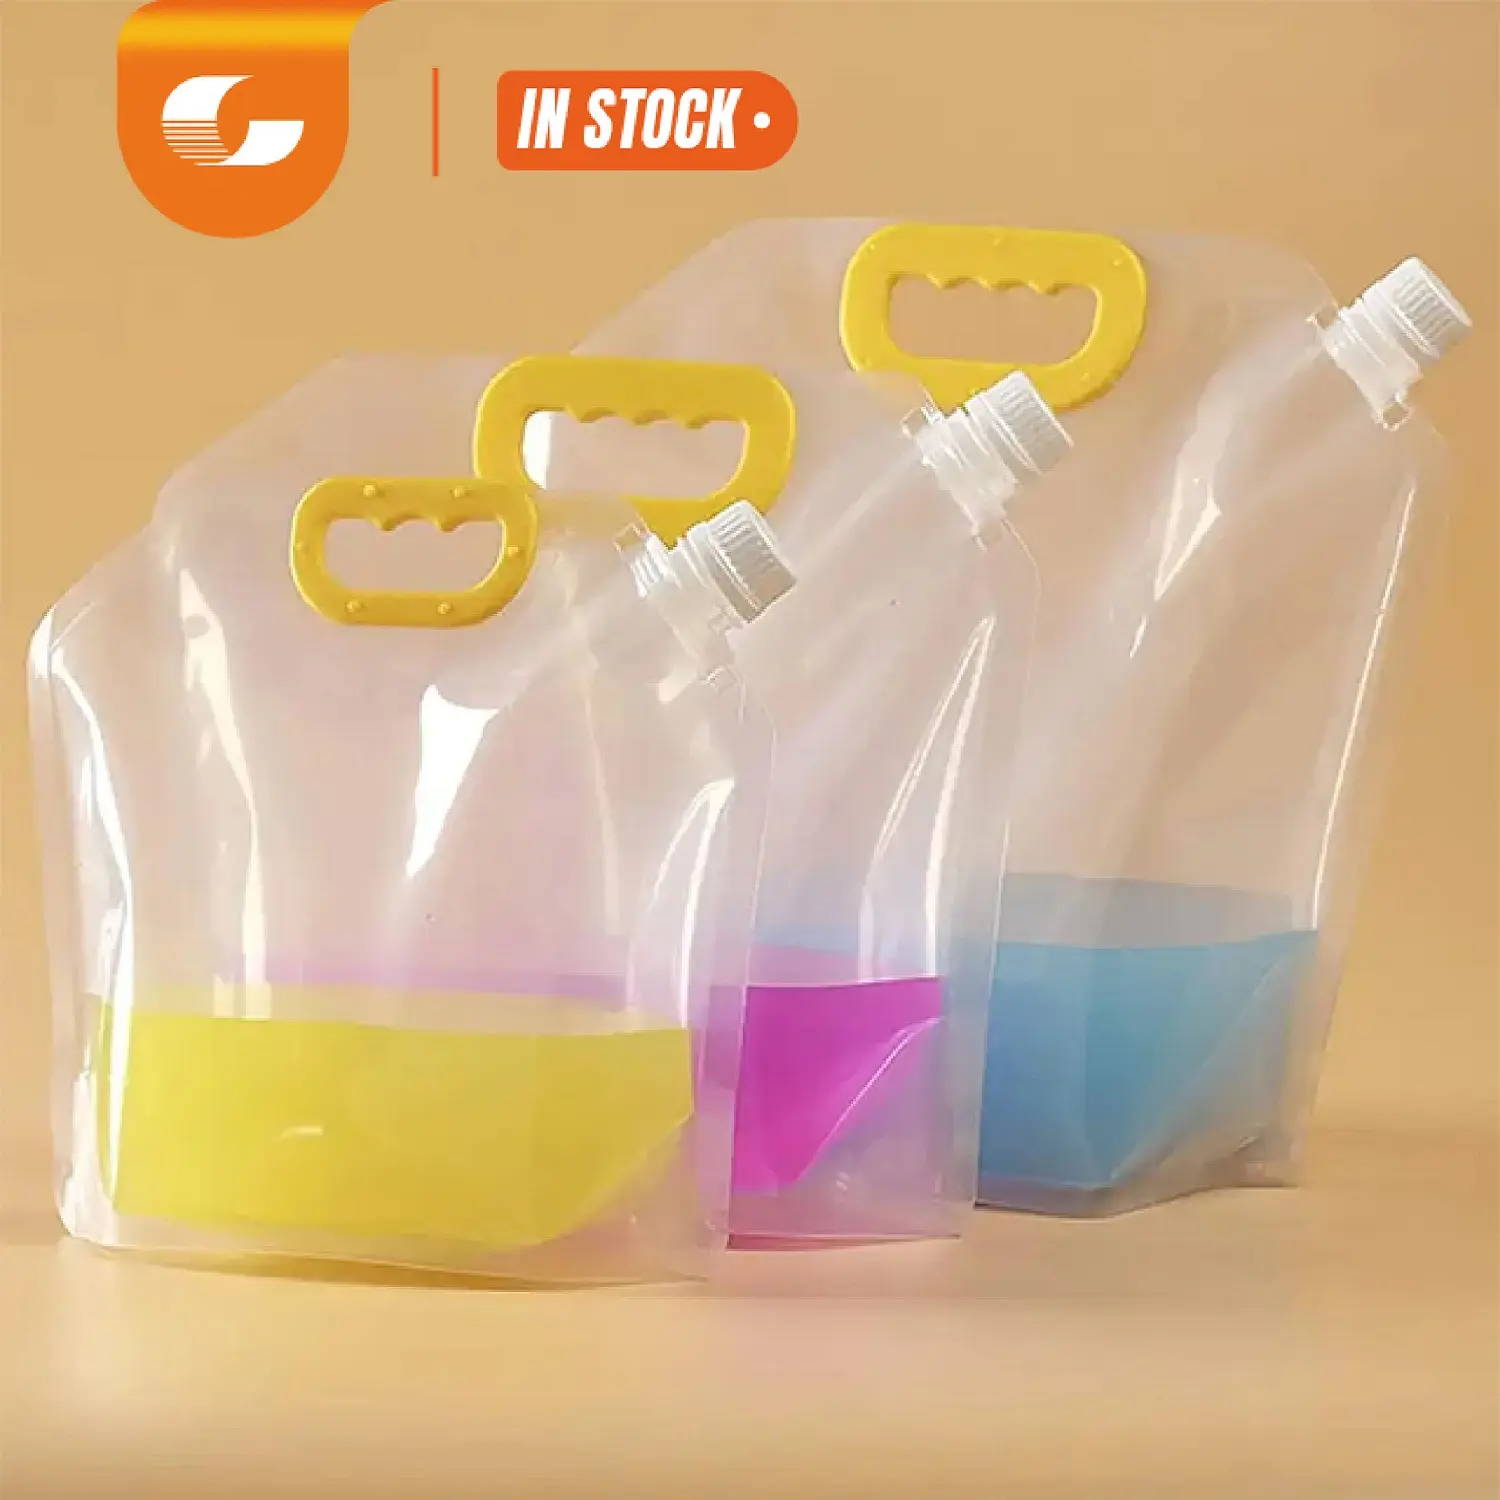 Pochette portative transparente personnalisée de 250g 1litre pour boisson à jus debout en plastique avec bec verseur